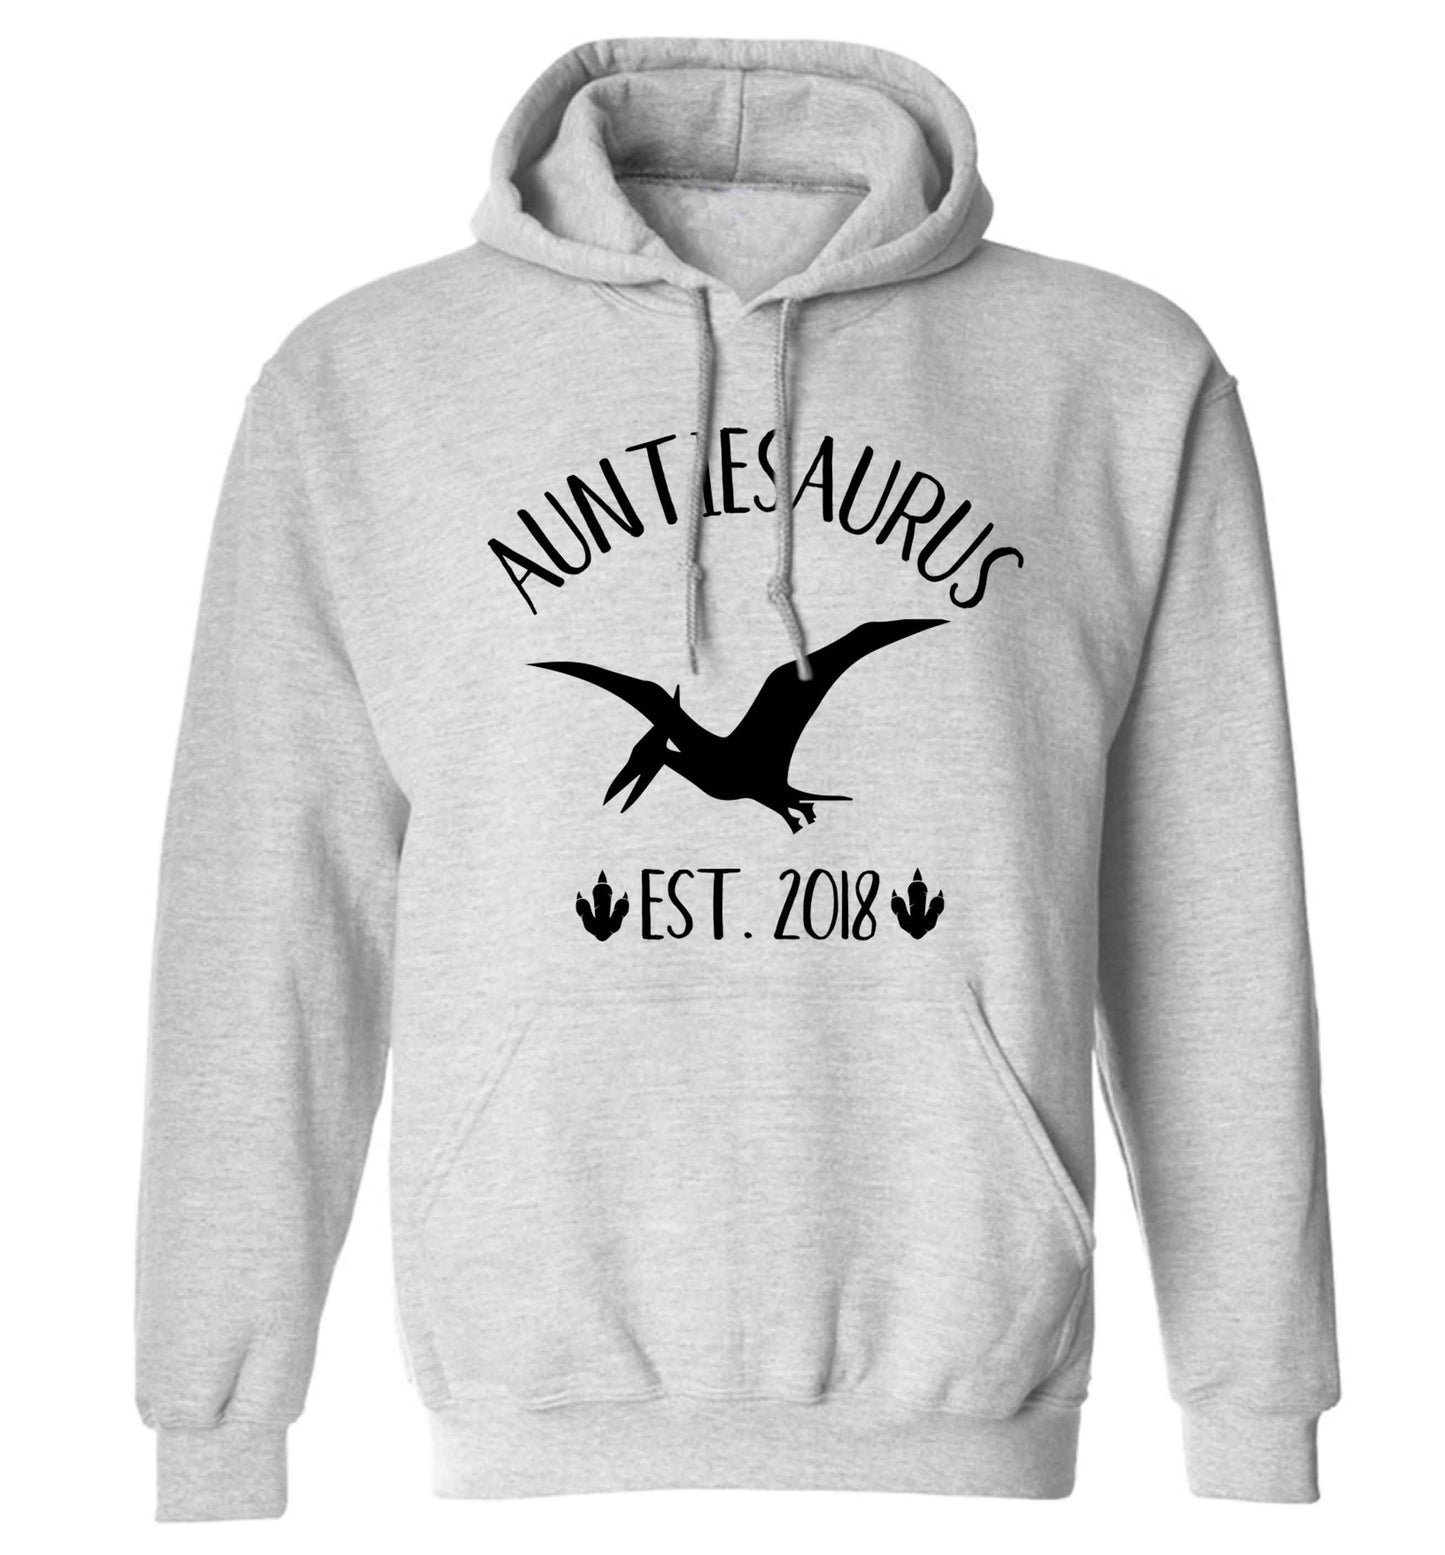 Personalised auntiesaurus since (custom date) adults unisex grey hoodie 2XL